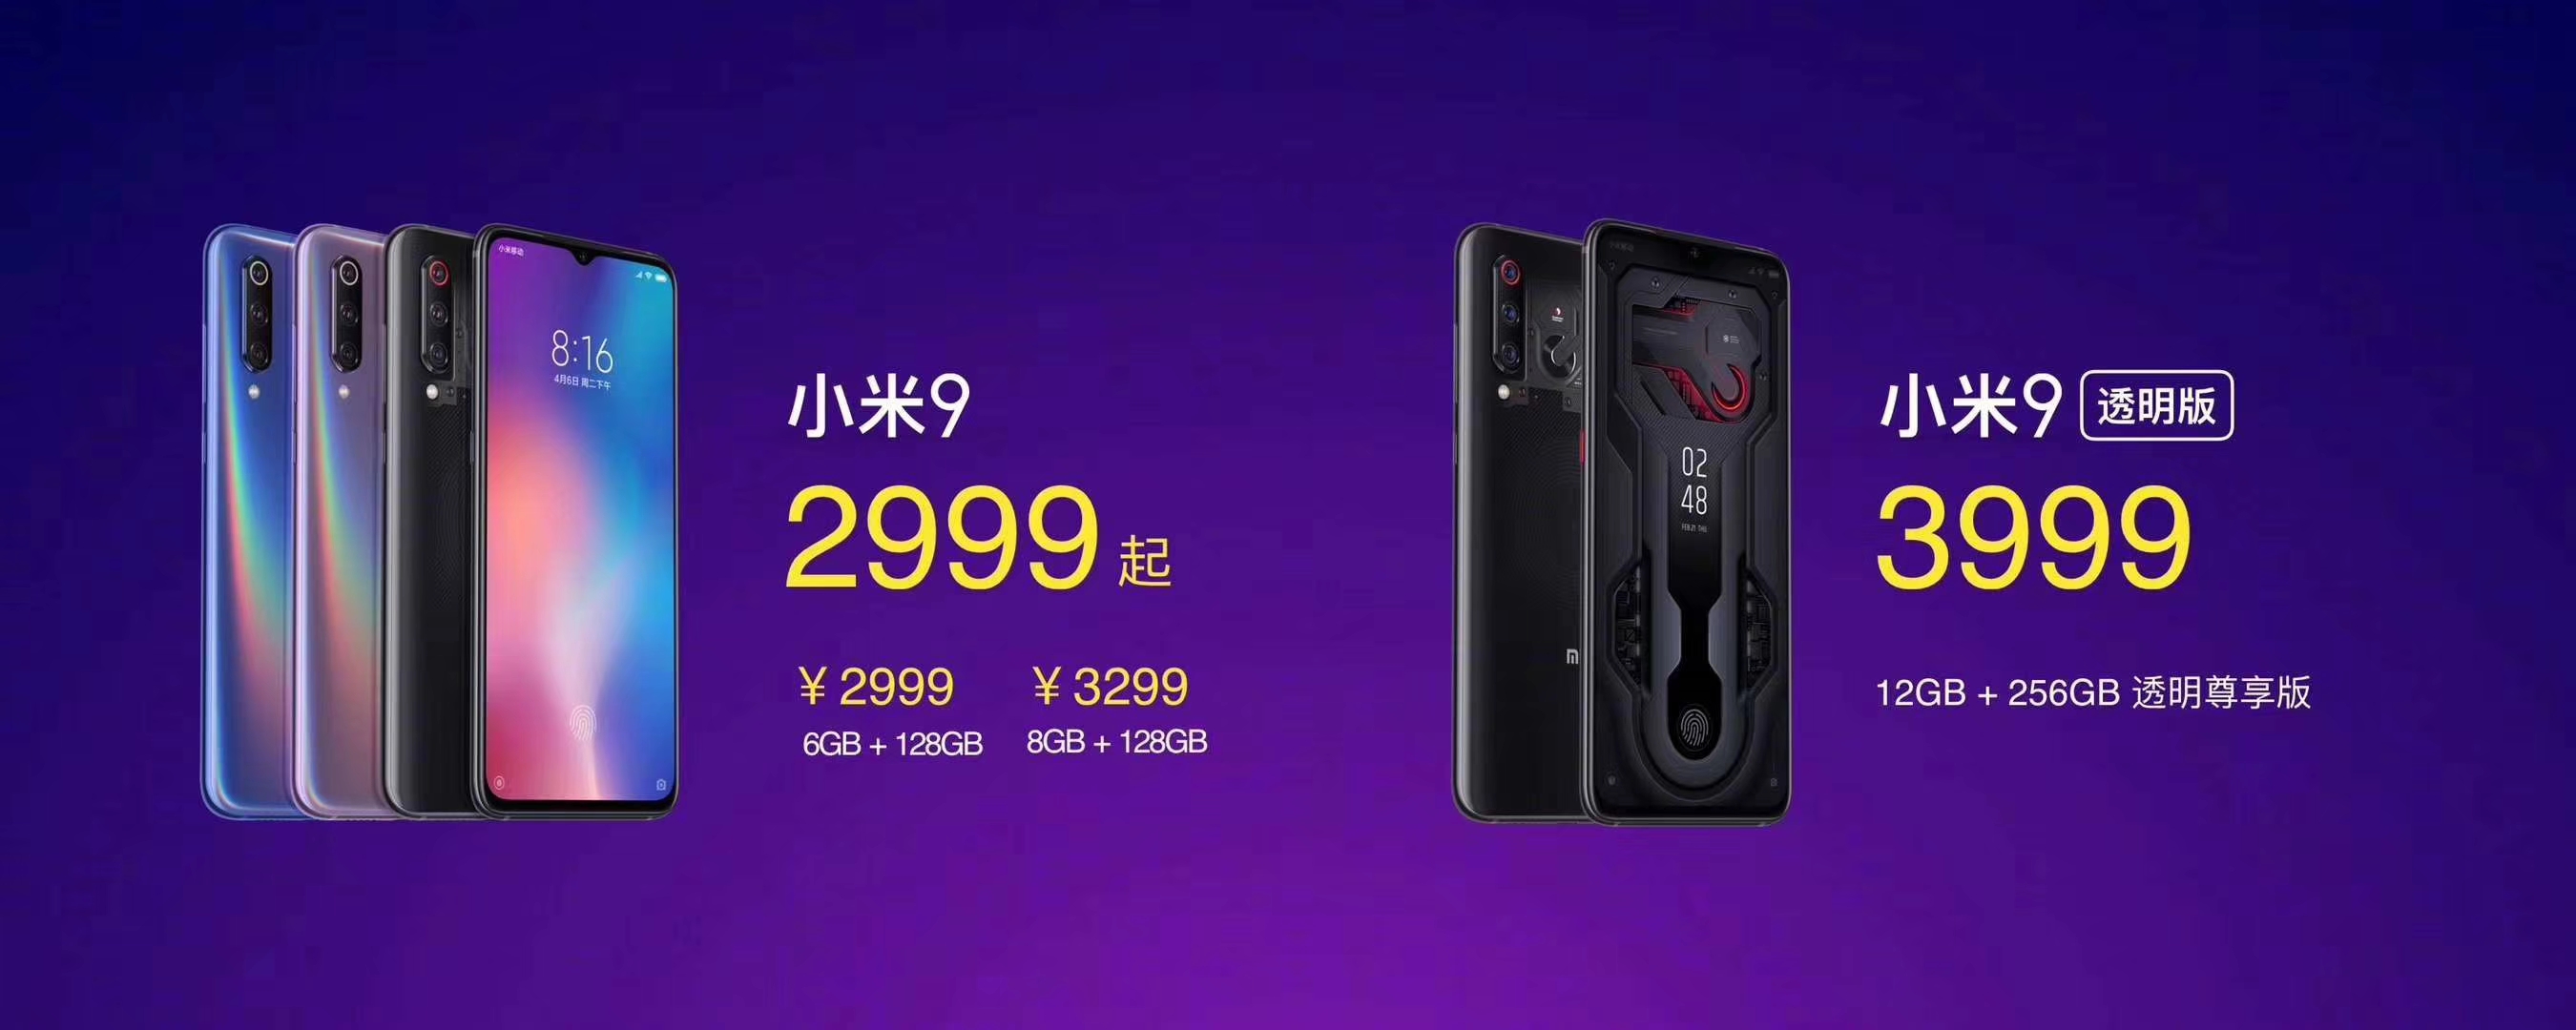 王源代言小米手机 小米9为全球首款量产骁龙855旗舰机-科记汇